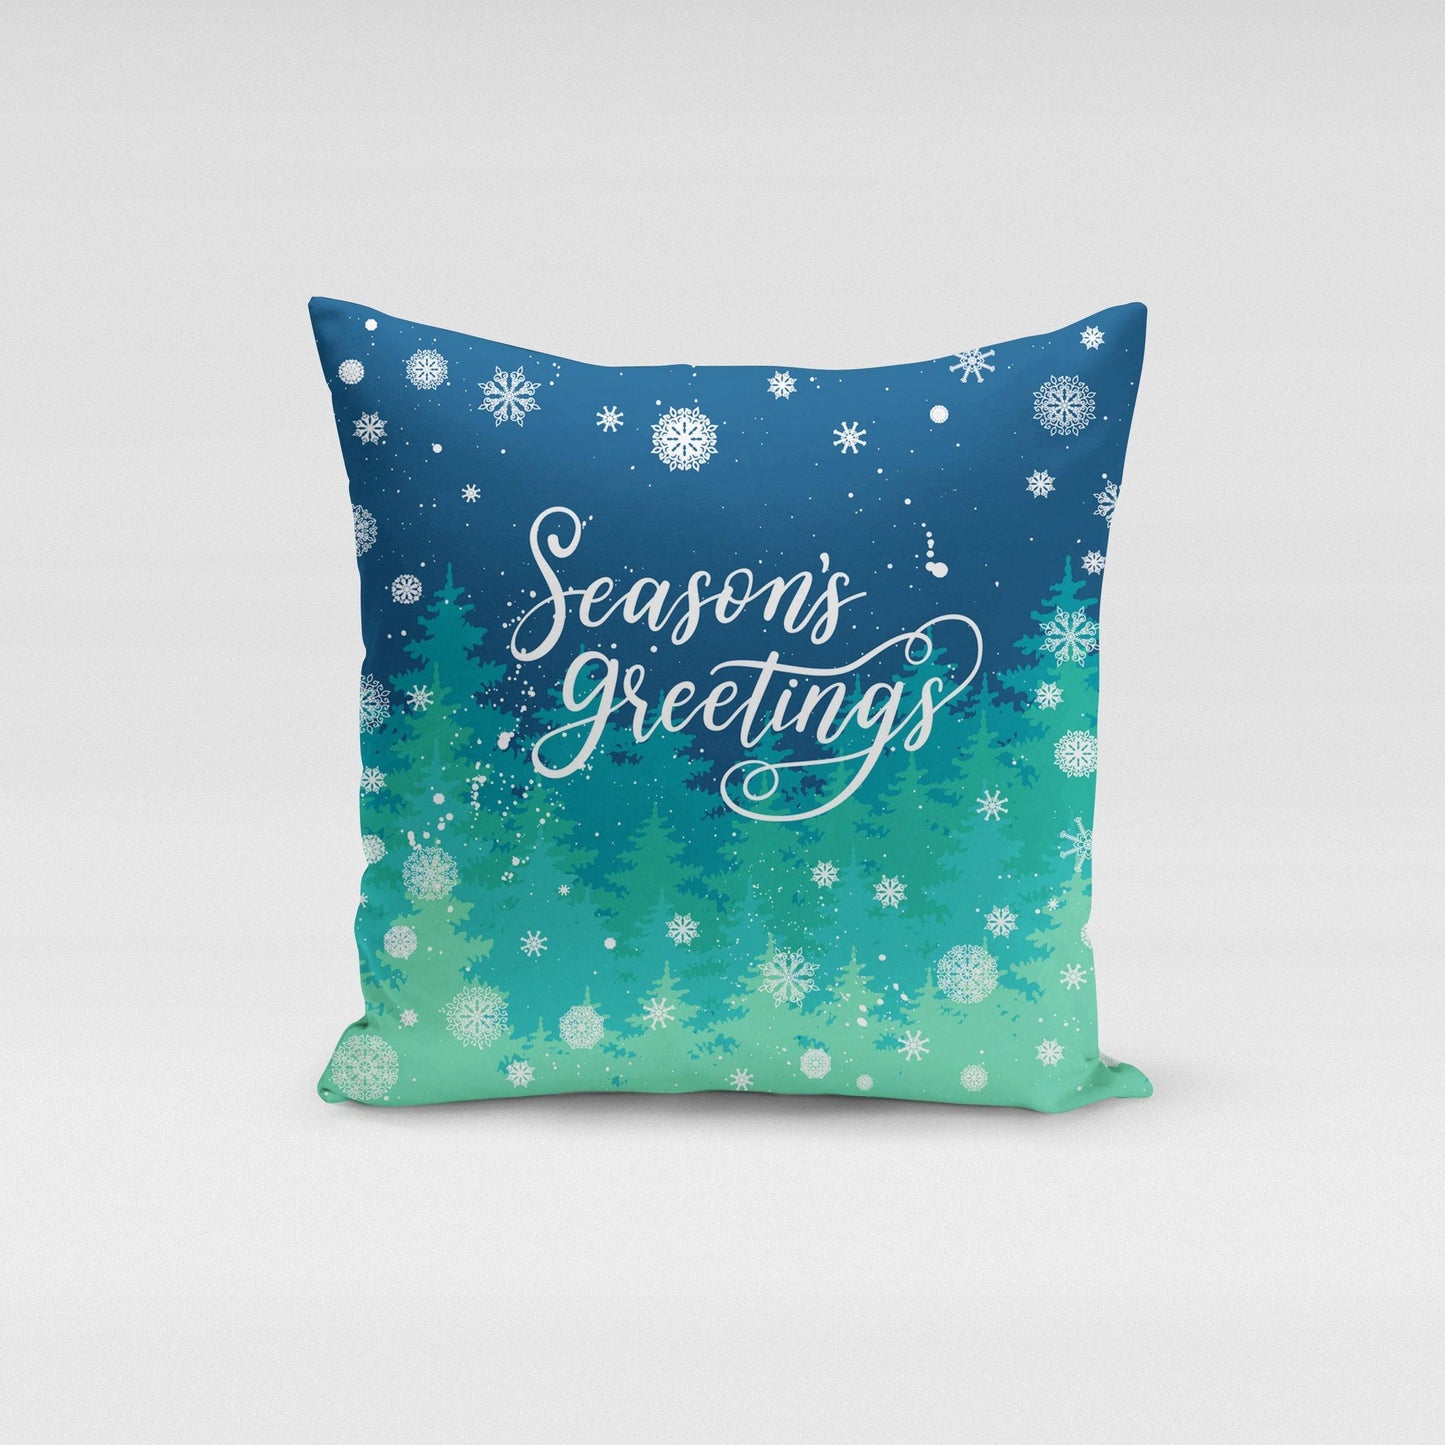 Seasons Greetings Pillow Cover